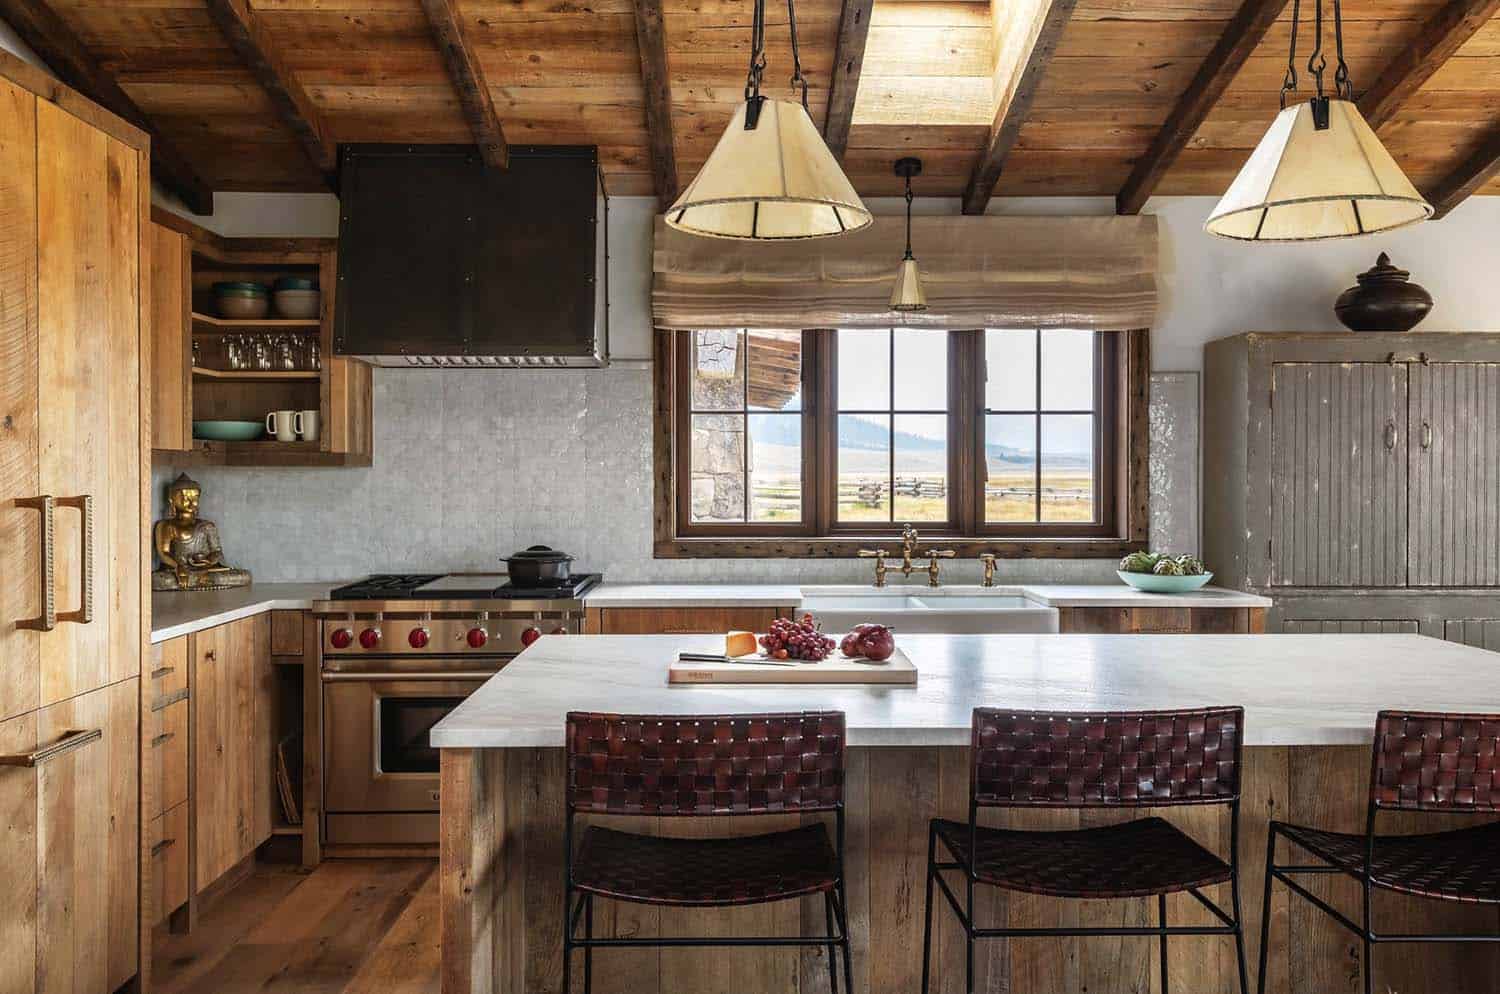 Một không gian bếp ấm áp và gần gũi bởi hệ thống đồ nội thất bằng gỗ tạo cảm giác gần gũi và thân thuộc cho các thành viên trong gia đình.